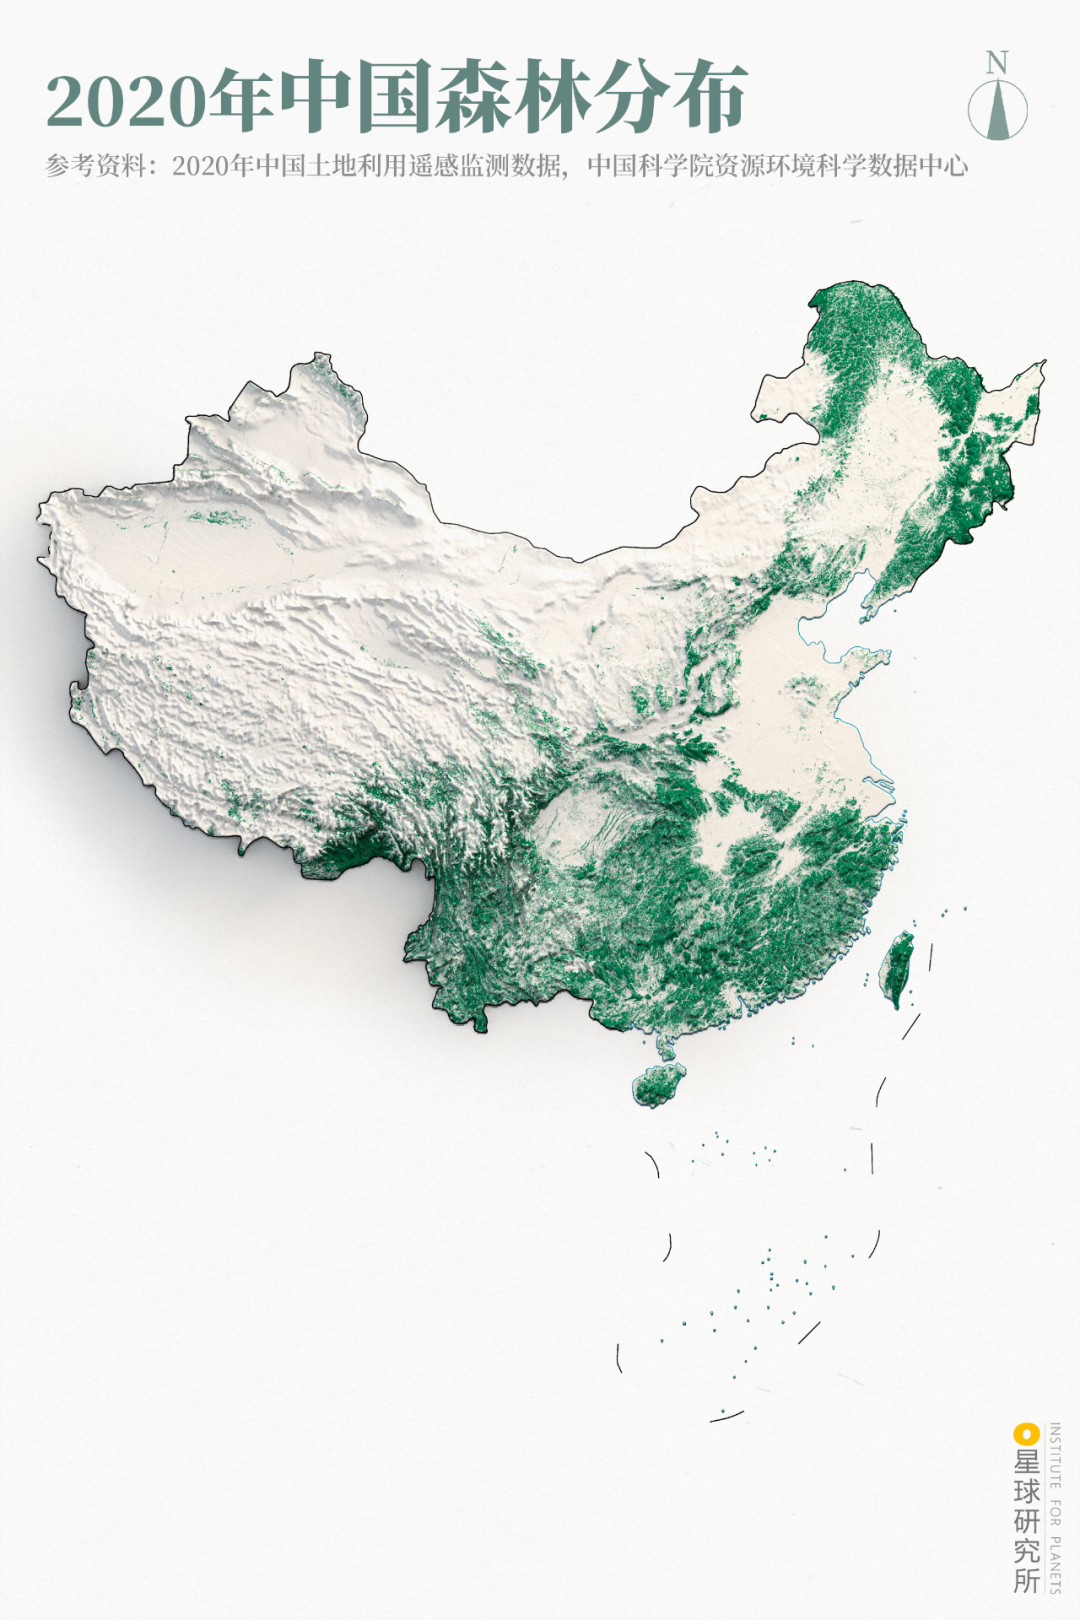 中国绿化面积变化图图片